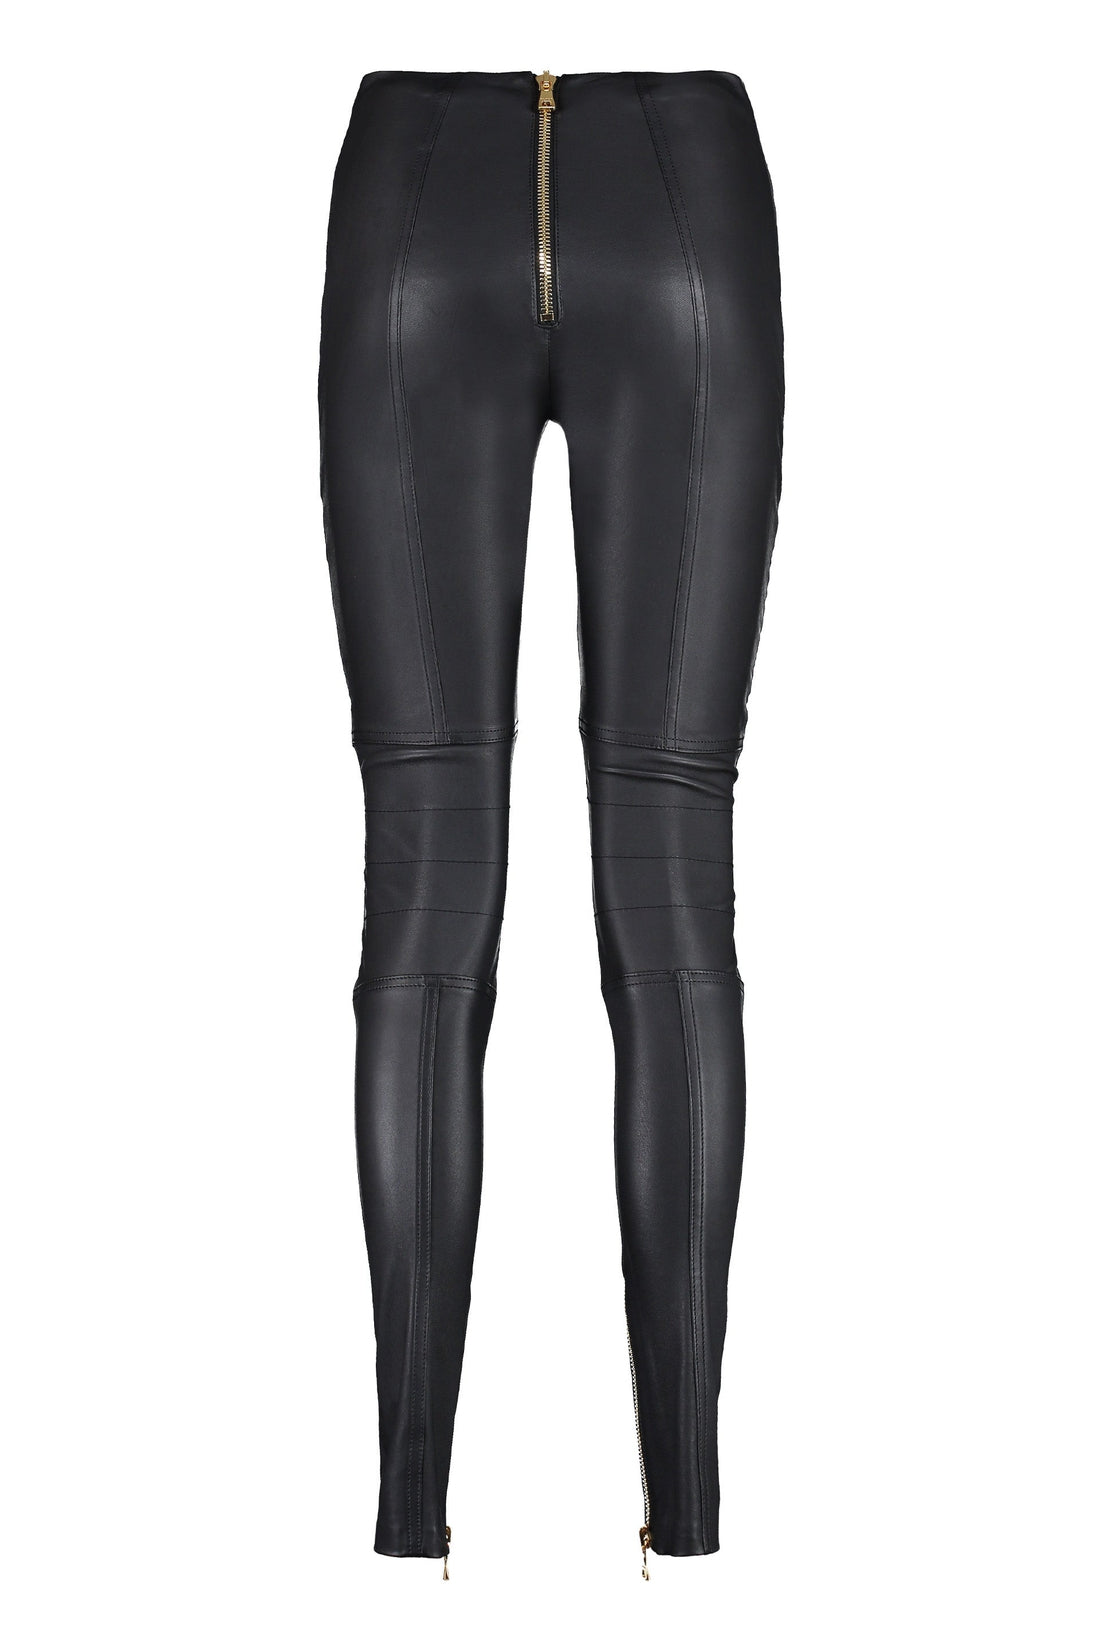 Balmain-OUTLET-SALE-Leather biker trousers-ARCHIVIST